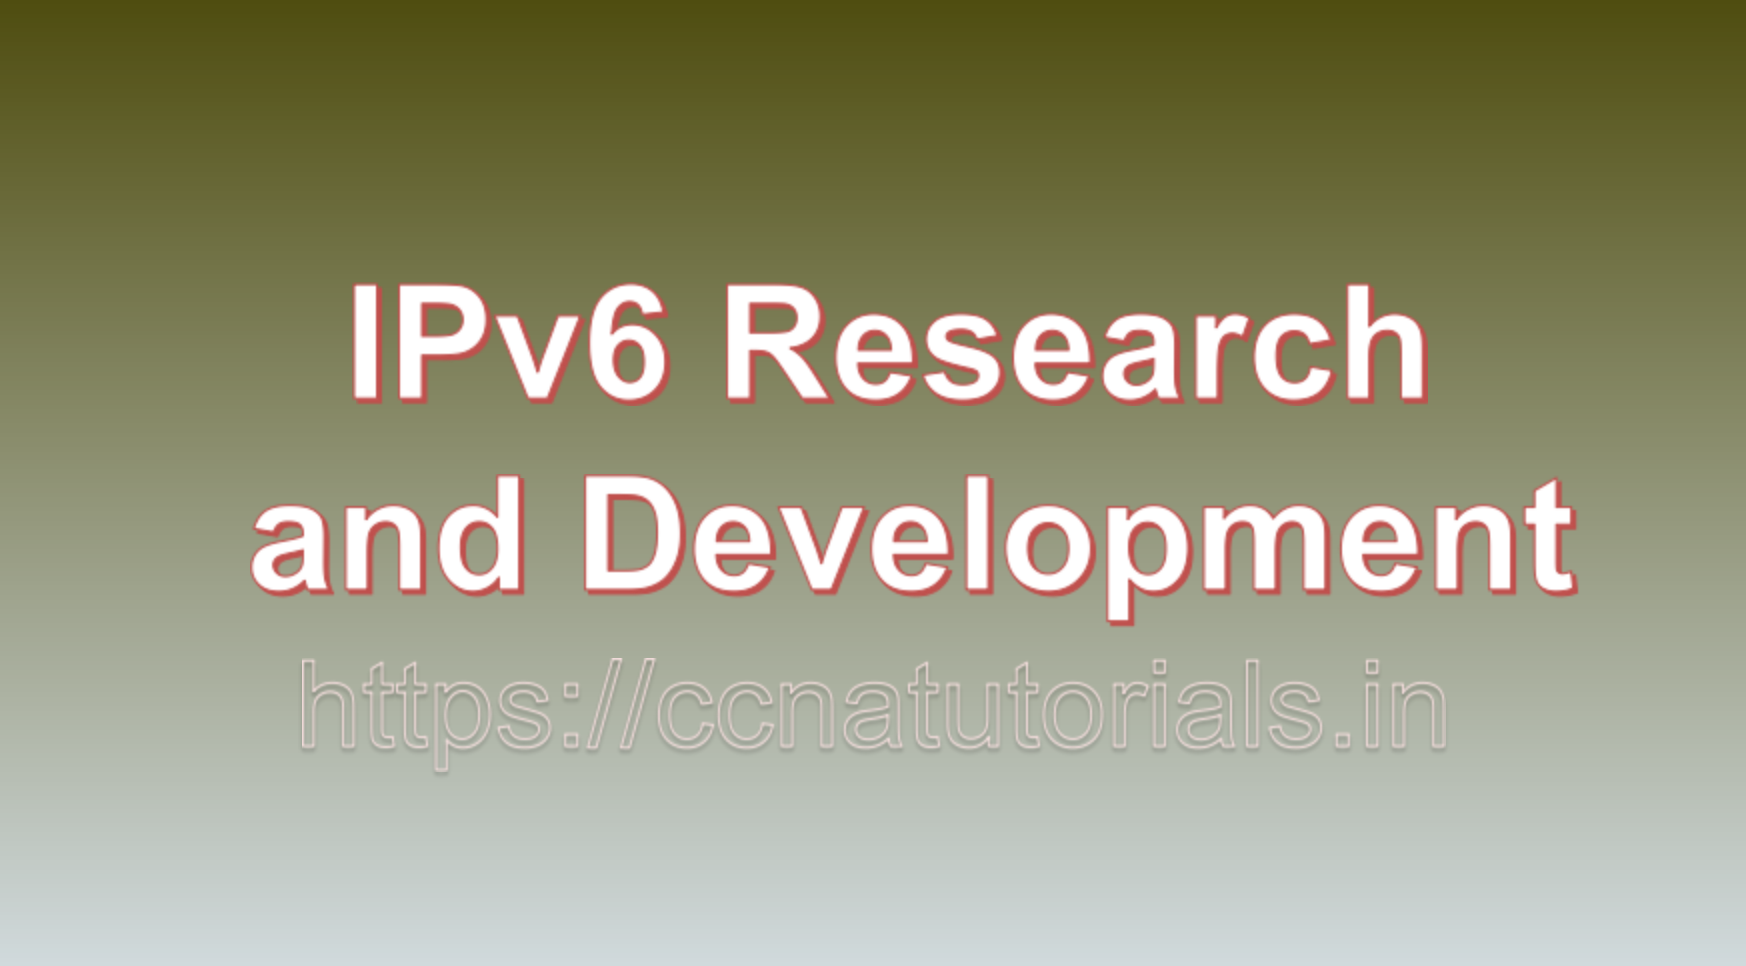 IPv6 Research and Development, CCNA, CCNA TUTORIALS